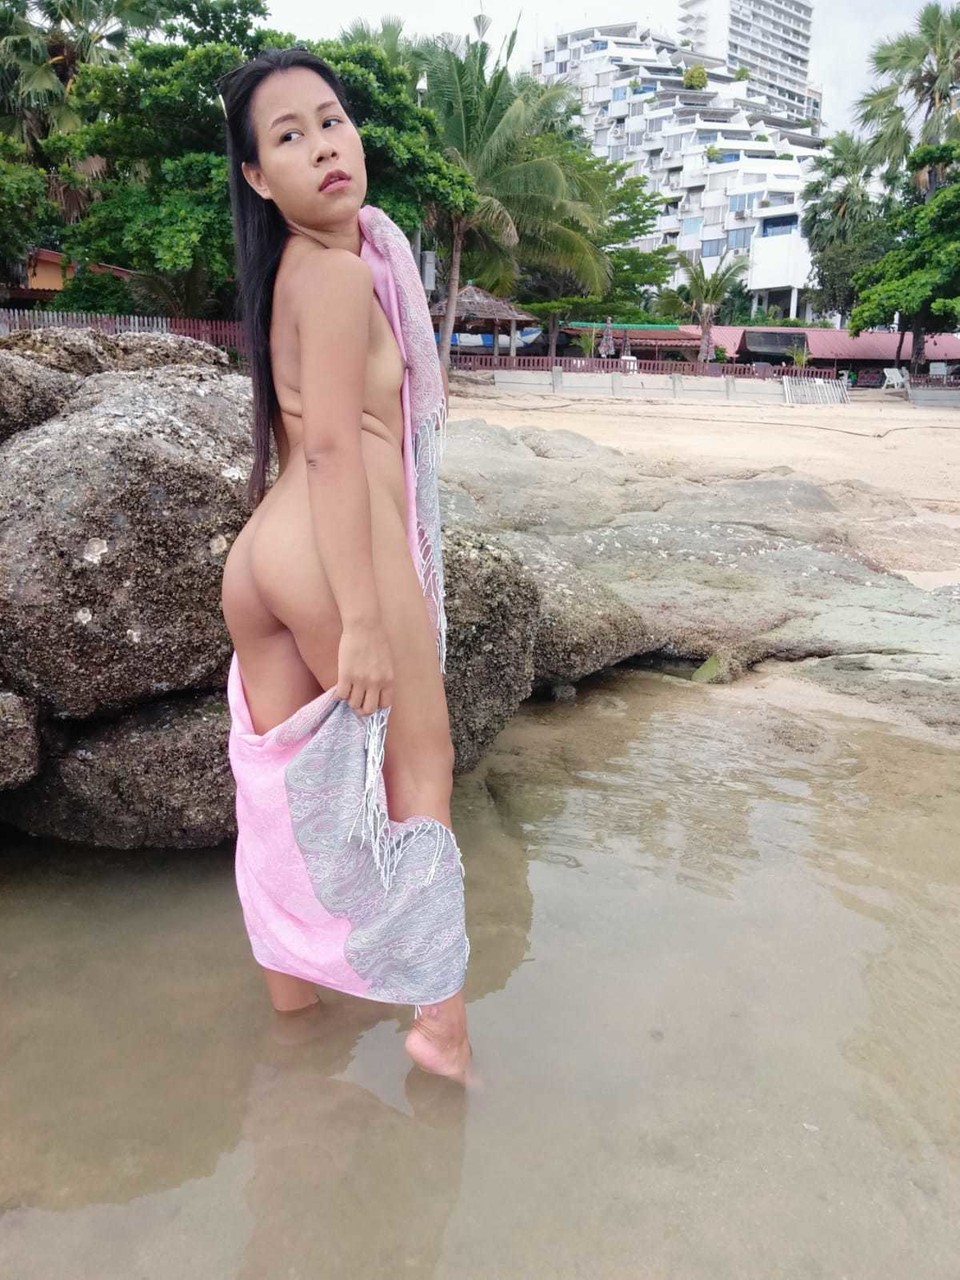 Gorgeous Asian amateur Kiki Asia shows her hot ass in a bikini at the beach порно фото #425545196 | TukTuk Thailand Pics, Kiki Asia, Thai, мобильное порно